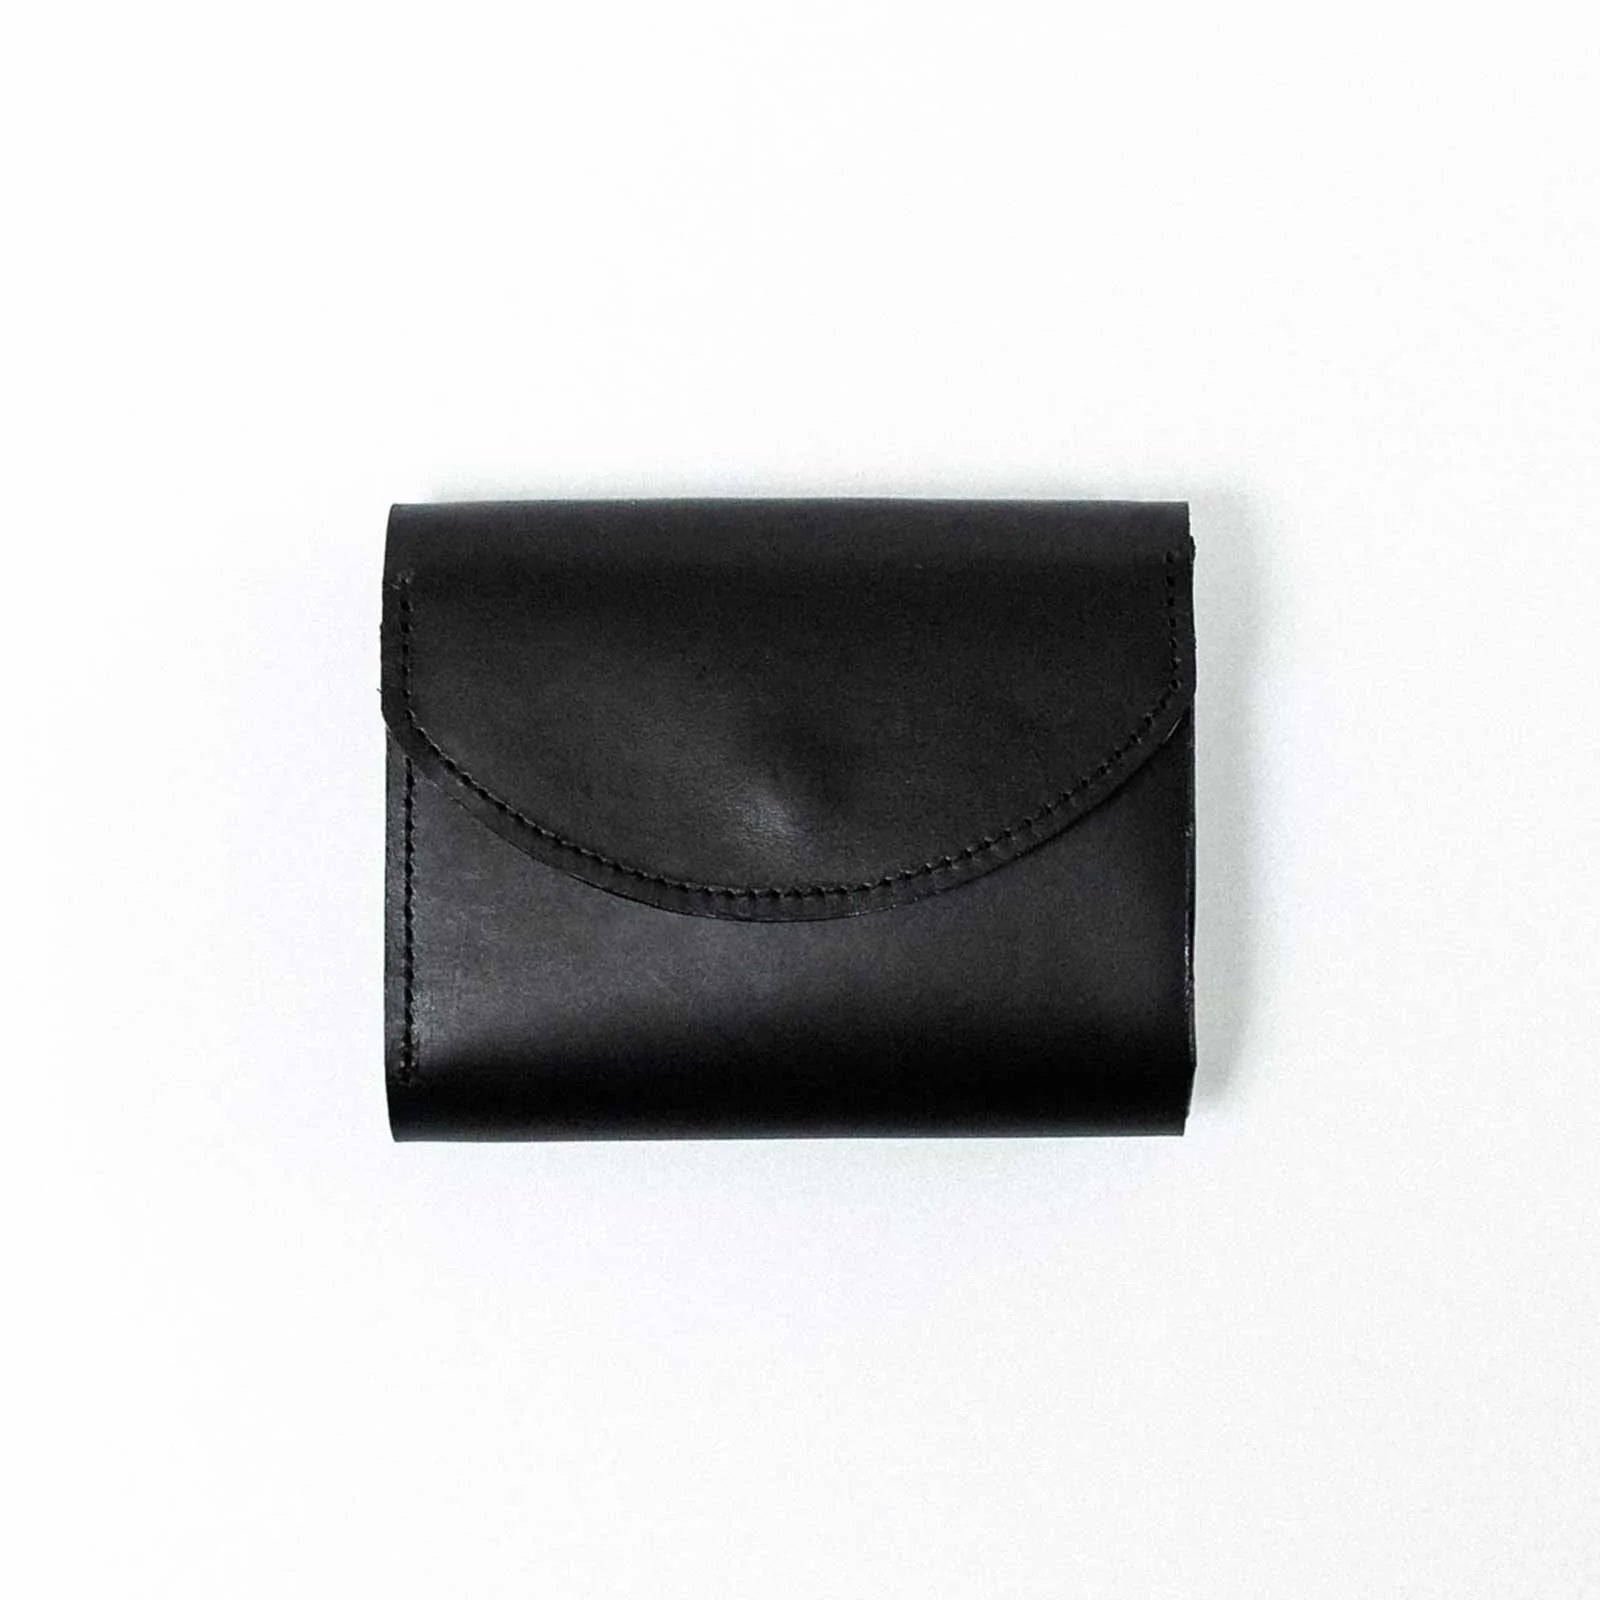 BUTTERO-3 fold wallet